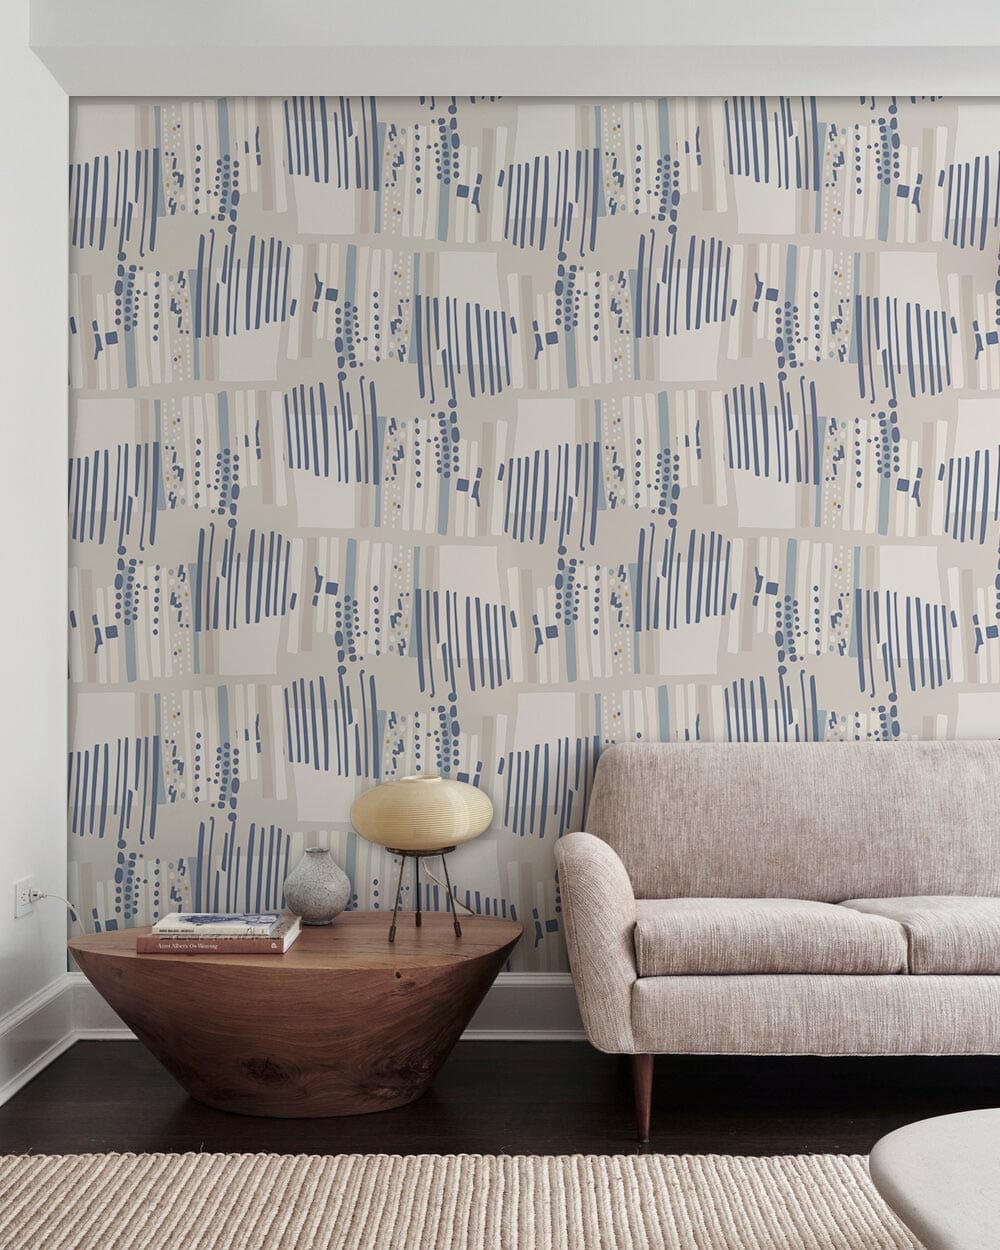 Aesthetic design for a fresh blue line wallpaper